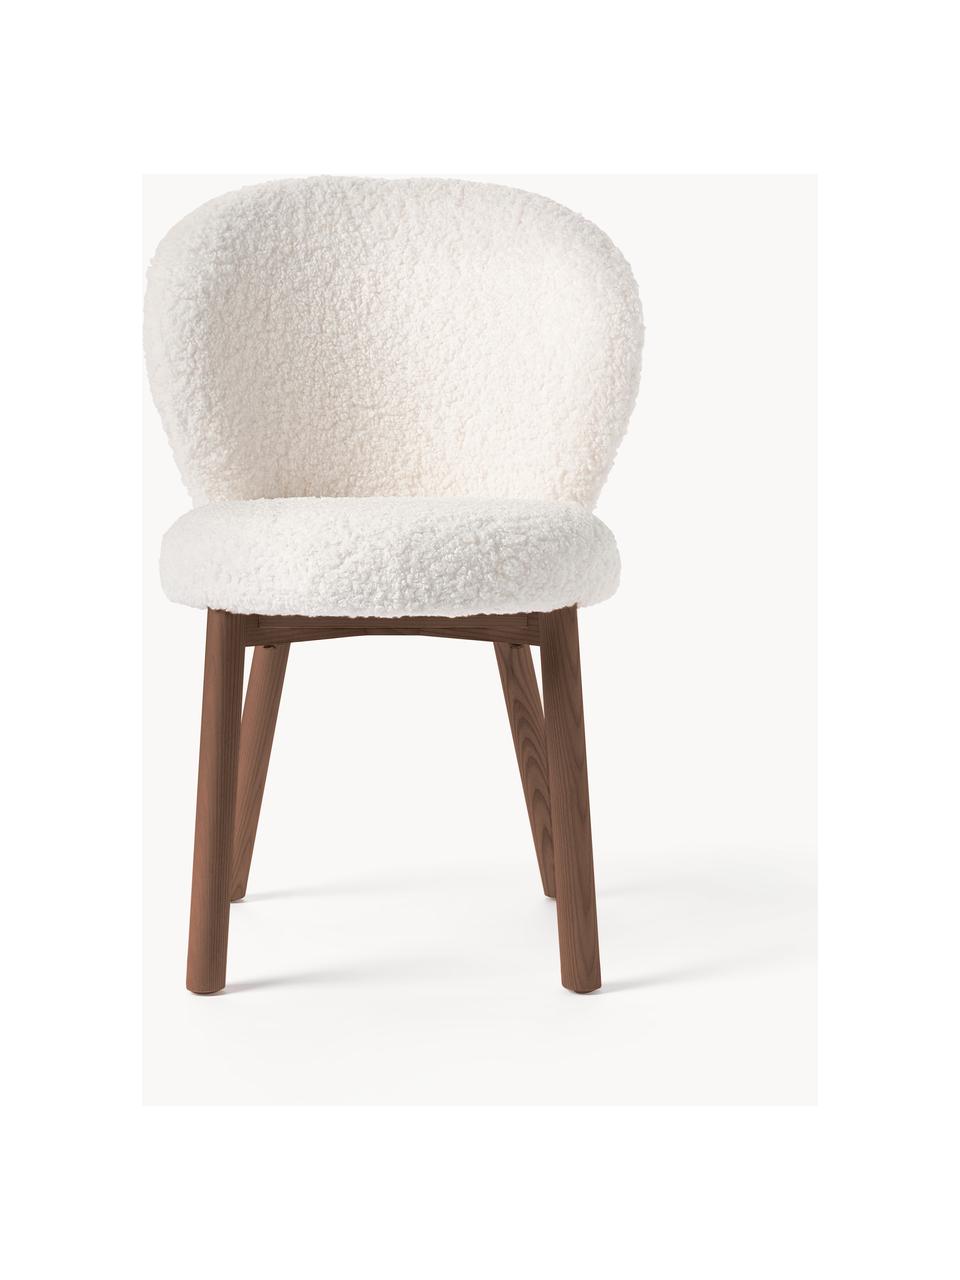 Krzesło tapicerowane Teddy Serena, Tapicerka: Teddy (100% poliester) Dz, Nogi: drewno jesionowe, Biały Teddy, drewno jesionowe lakierowane na brązowo, S 56 x G 64 cm